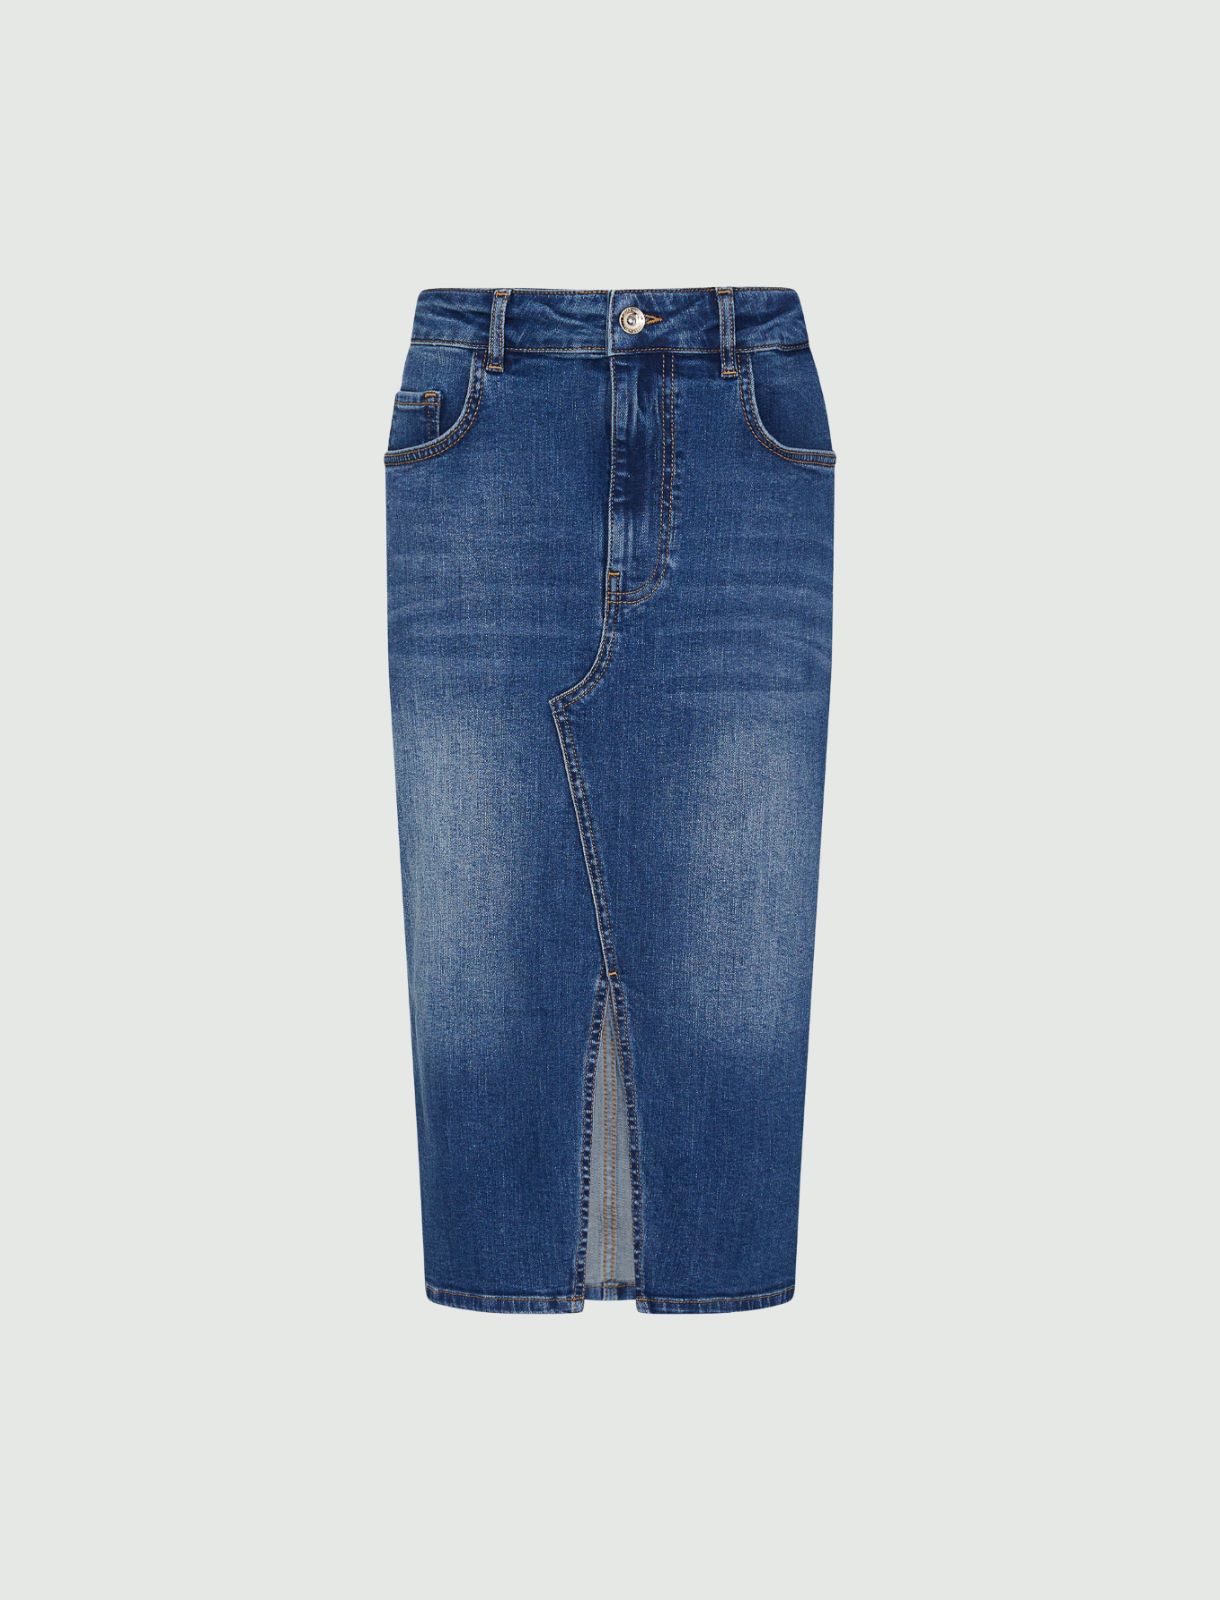 Denim skirt - Blue jeans - Marina Rinaldi - 4